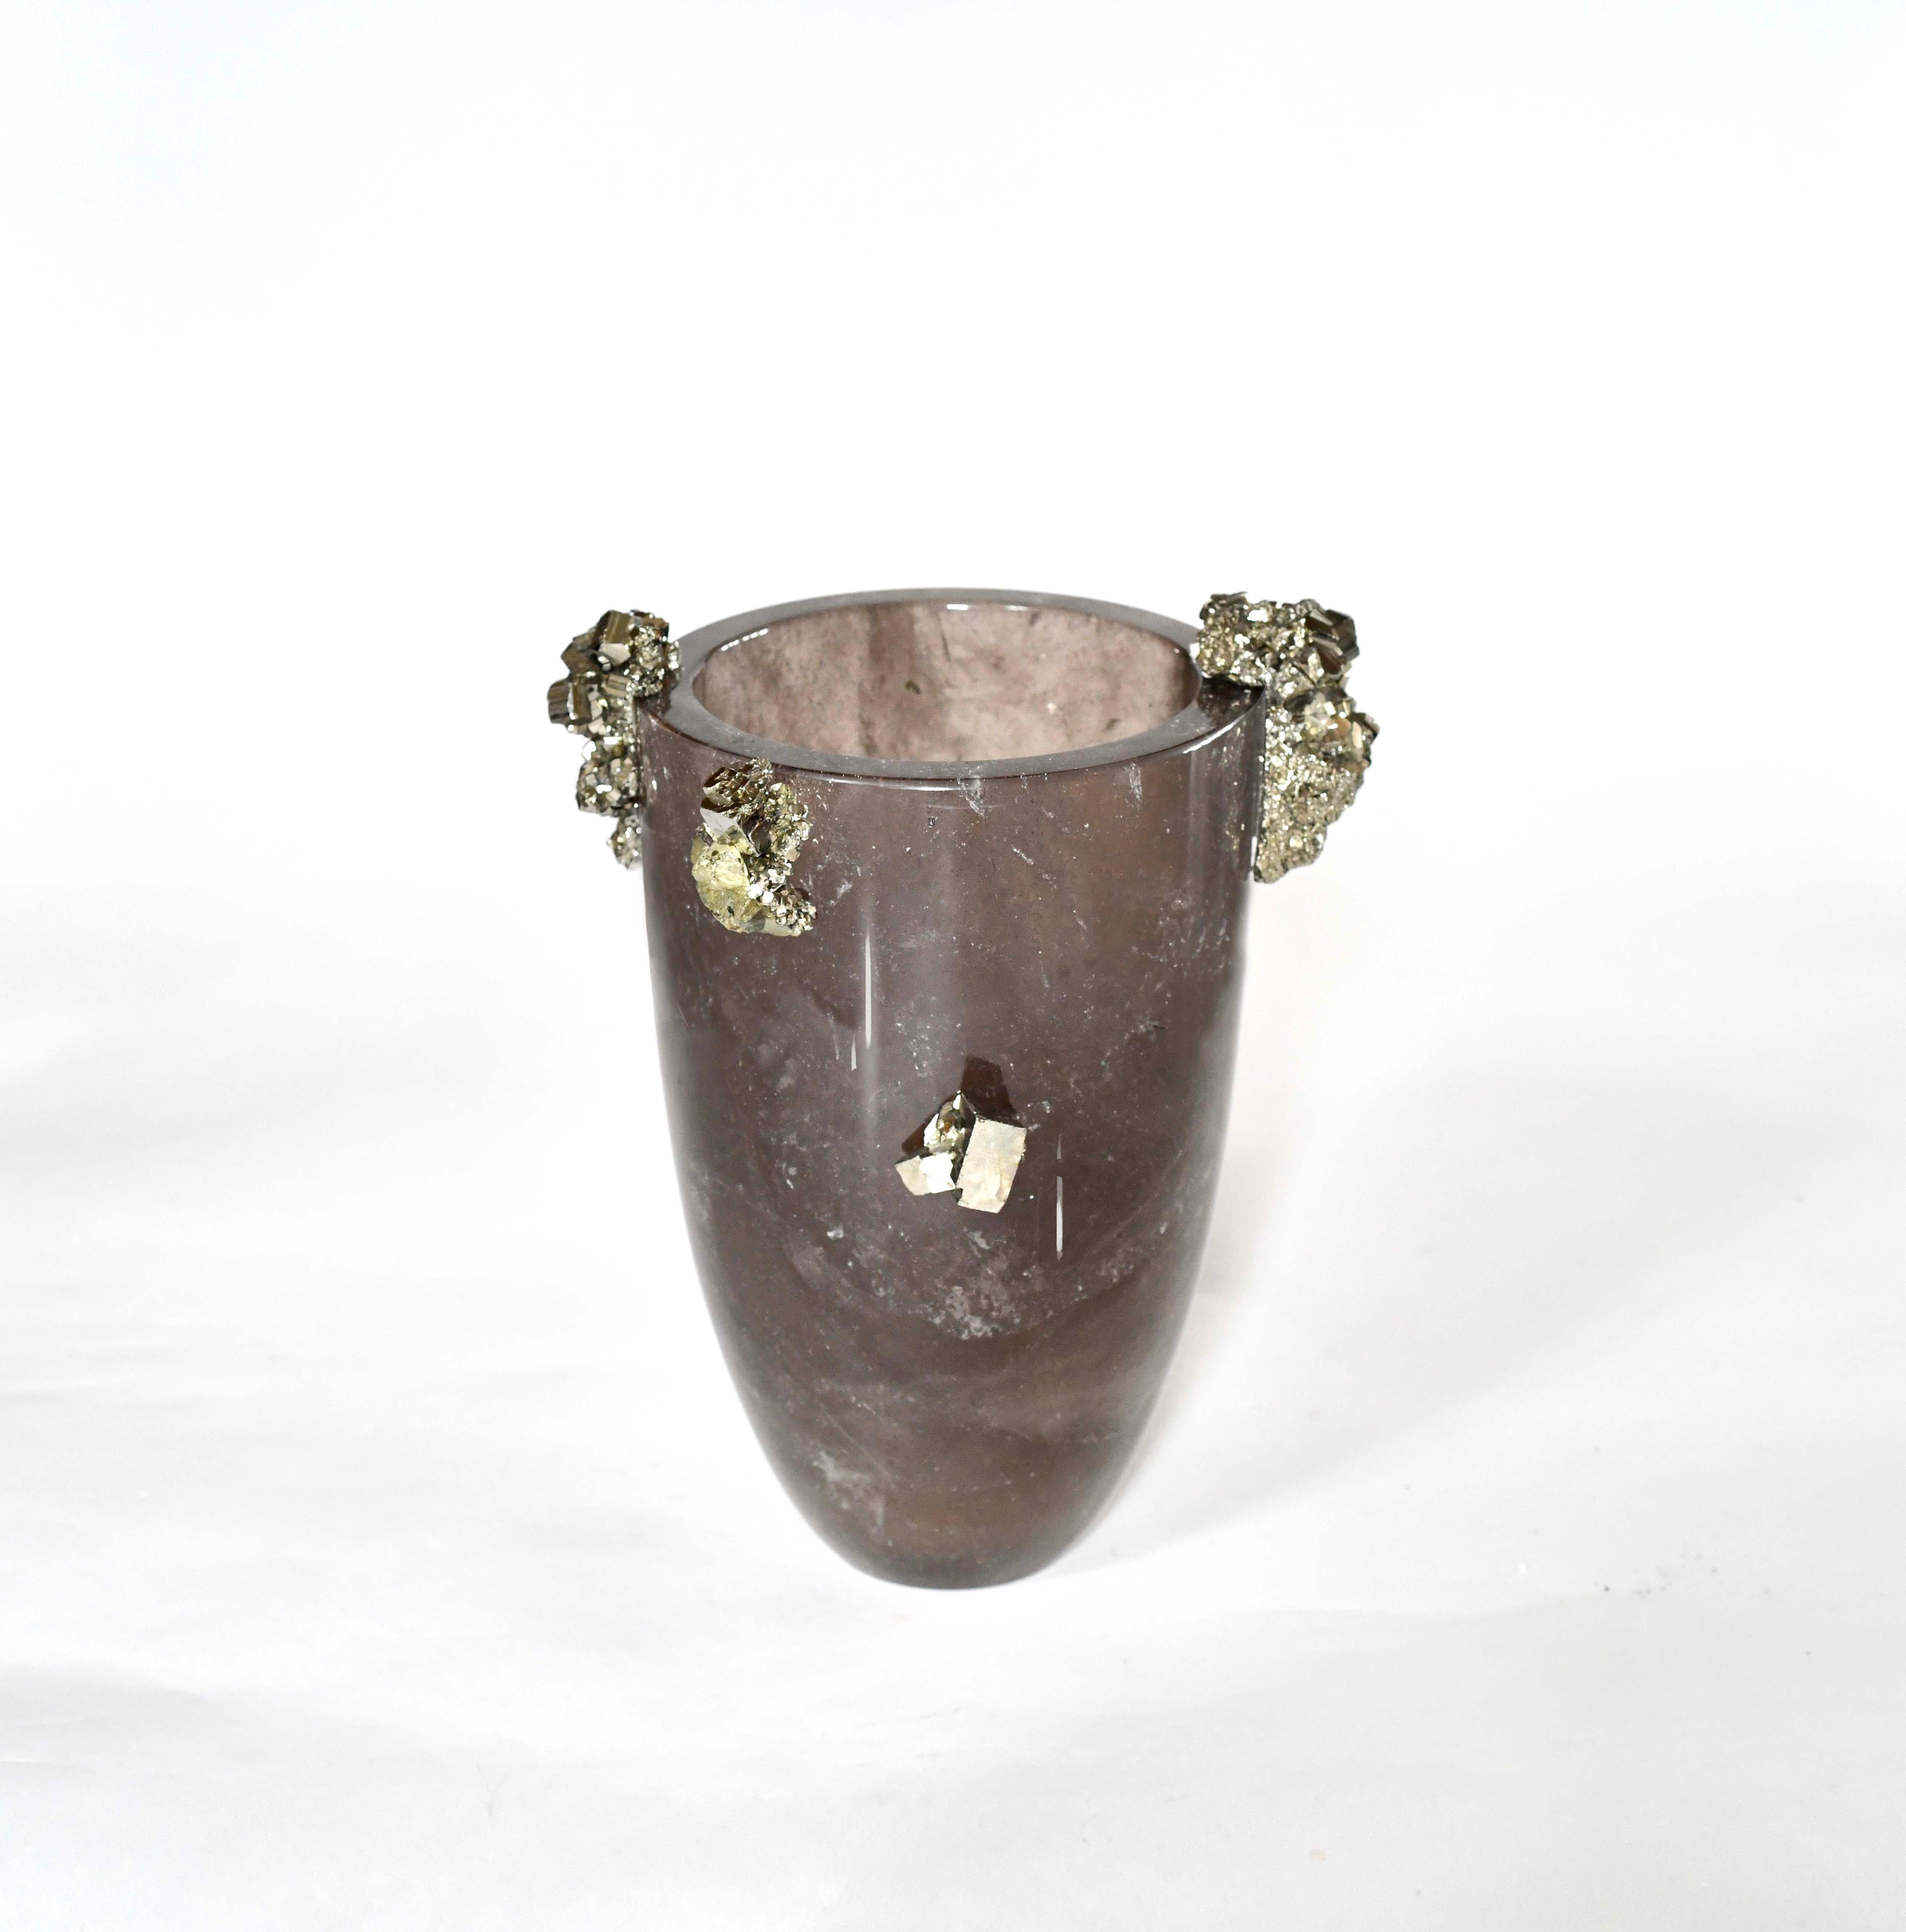 Fein geschnitzte Vase aus rauchigem Bergkristall mit natürlichem Edelsteindekor. Erstellt von Phoenix Gallery, NYC.
 